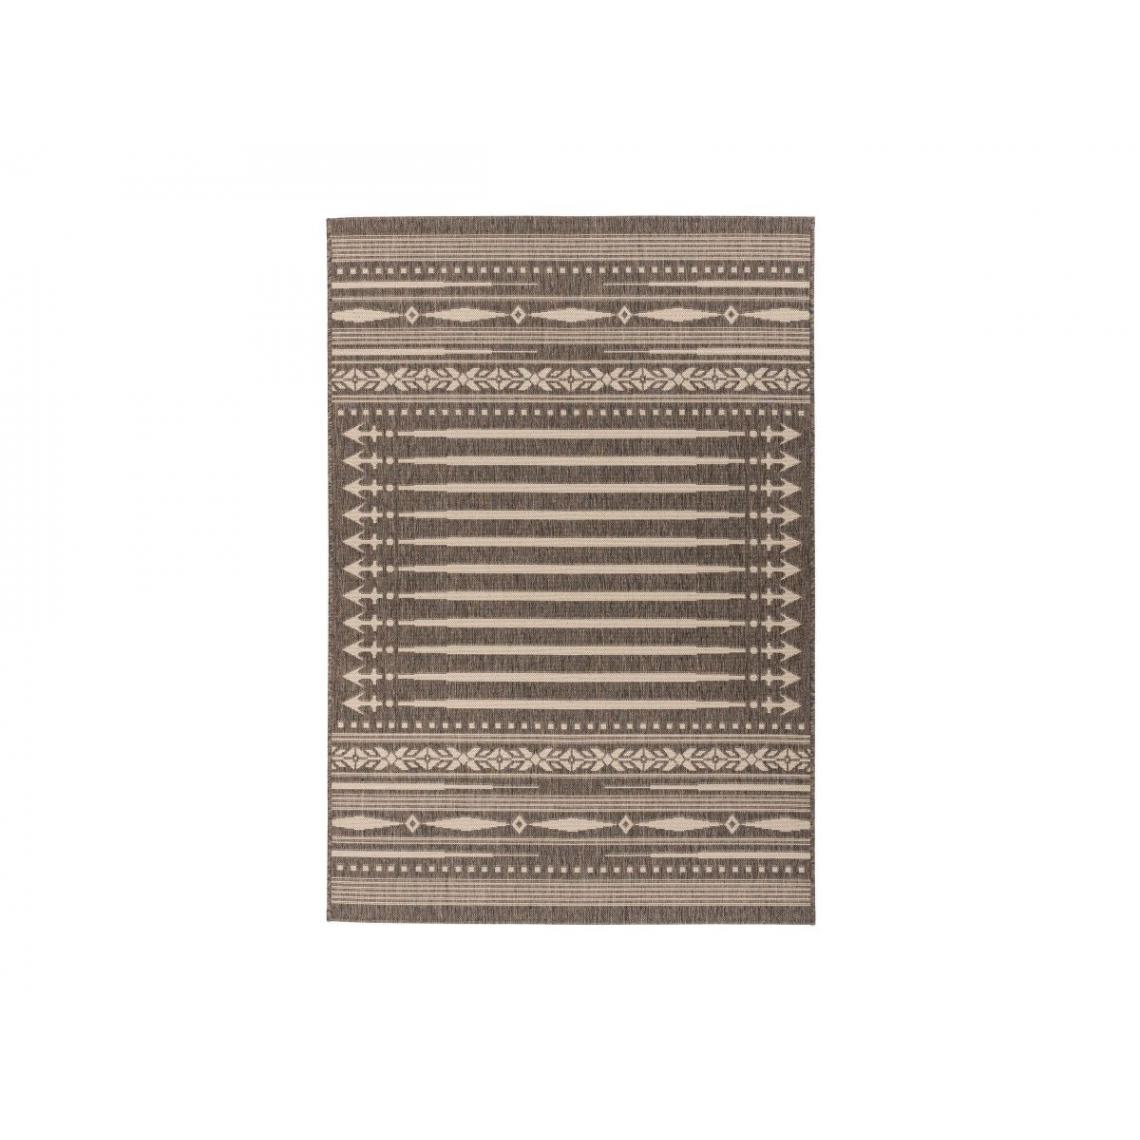 Bobochic - BOBOCHIC Tapis poil court rectangulaire FERANI motif graphique Marron 160x230 - Tapis